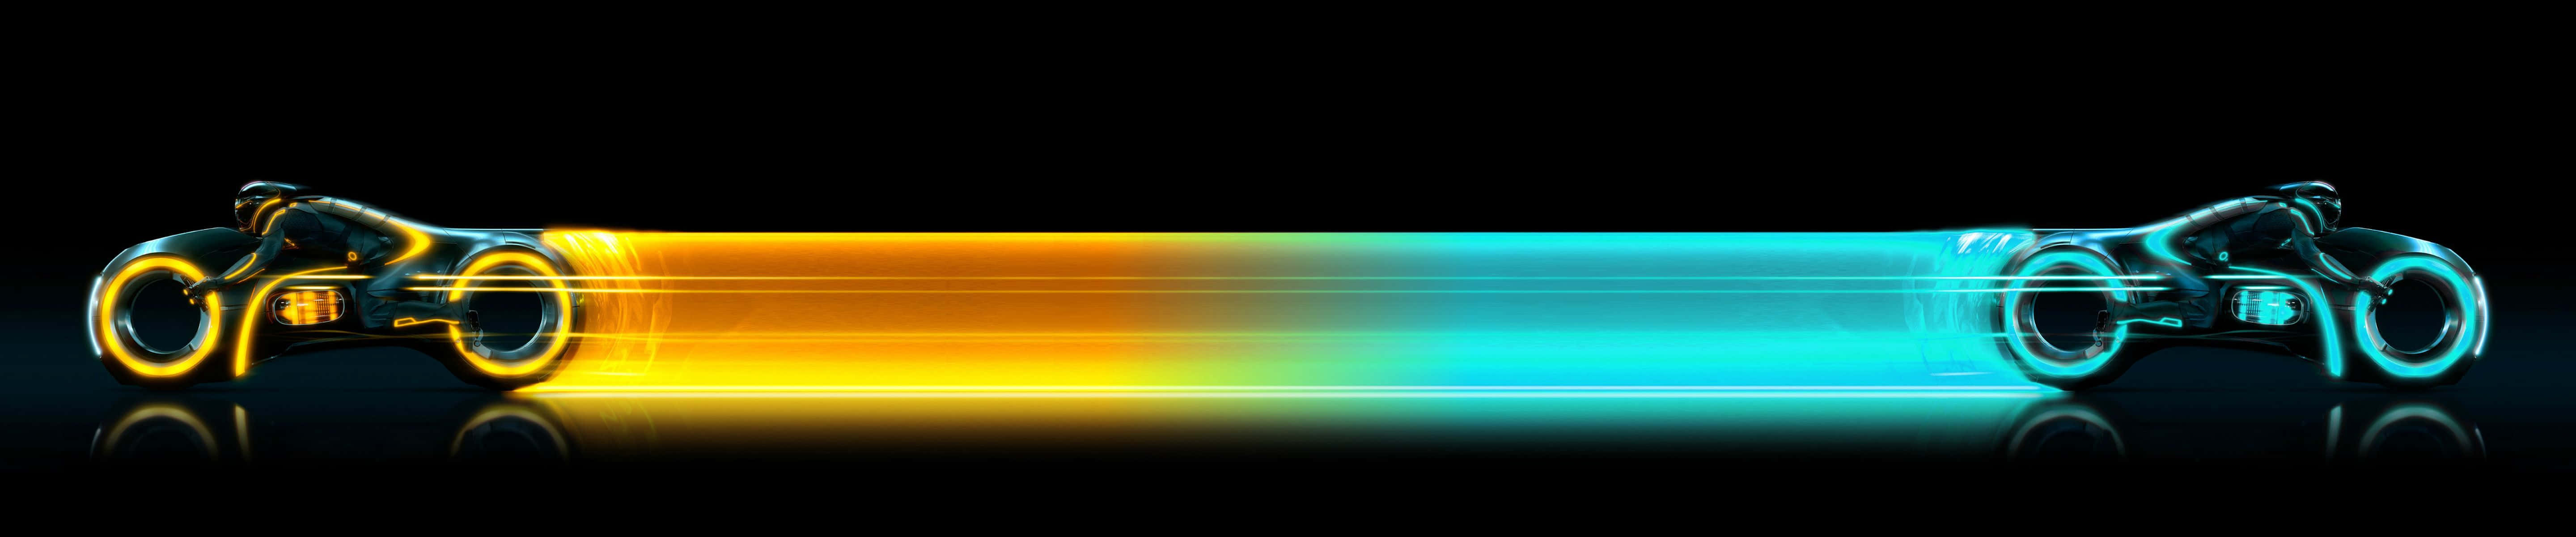 Impresionantefondo De Pantalla Para Monitor Pixel 3 Con Motos Tron Amarillas Y Azules